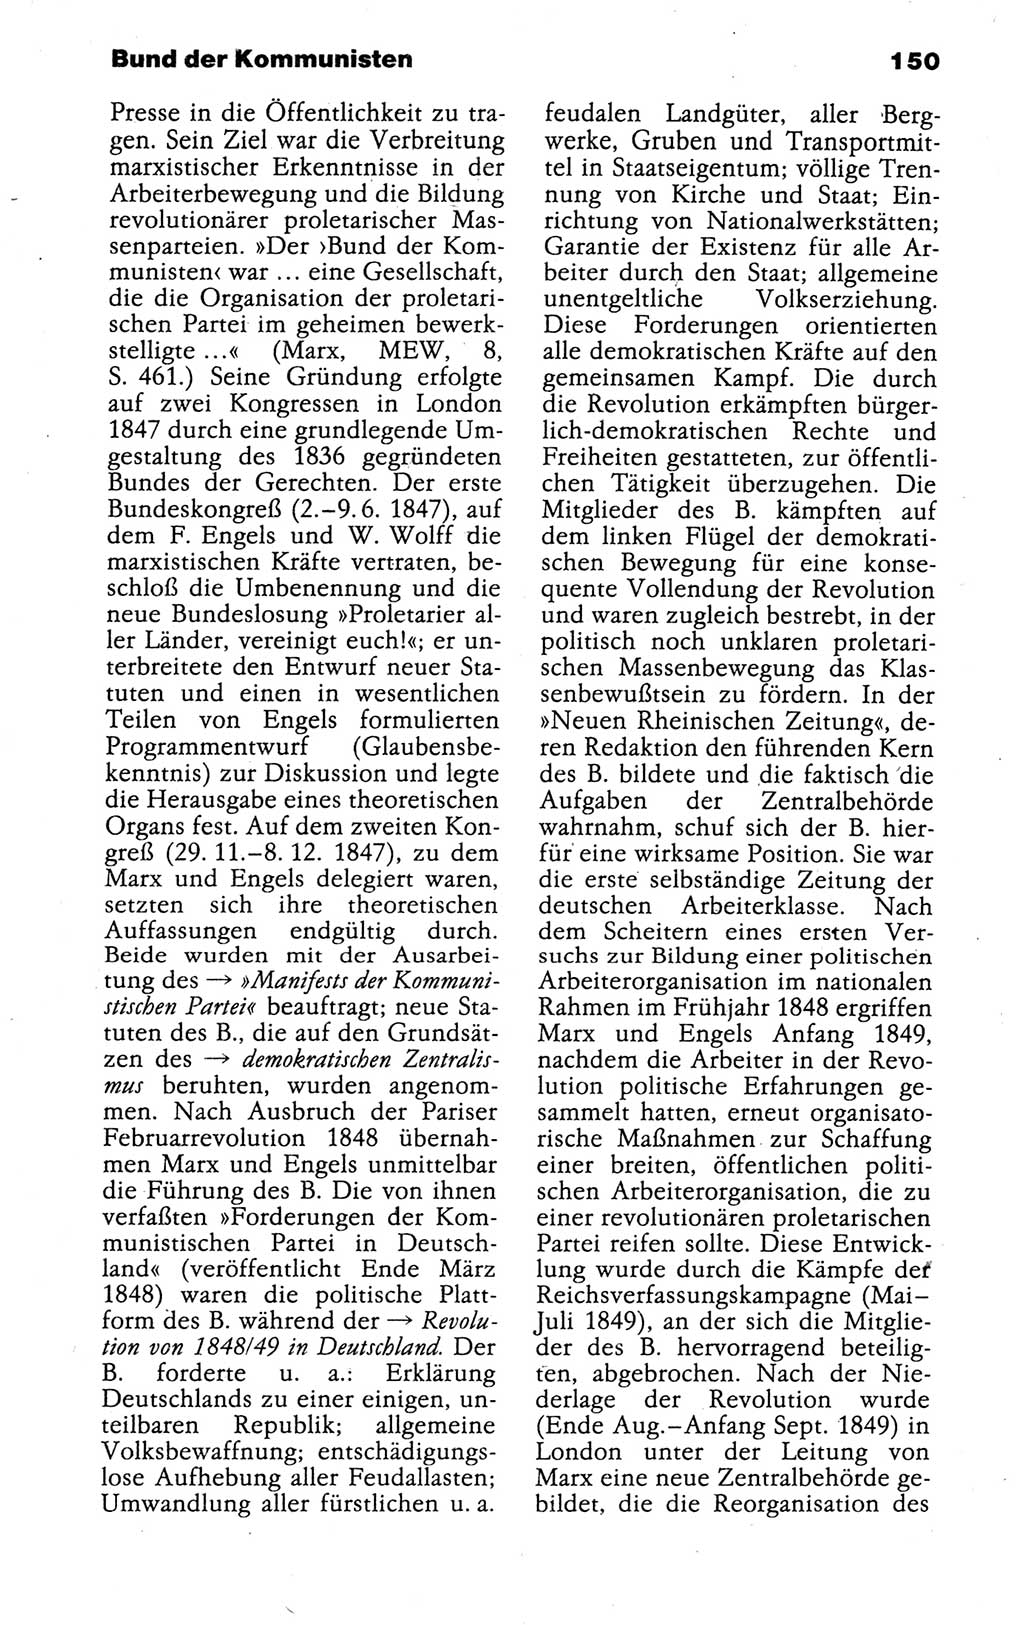 Kleines politisches Wörterbuch [Deutsche Demokratische Republik (DDR)] 1988, Seite 150 (Kl. pol. Wb. DDR 1988, S. 150)